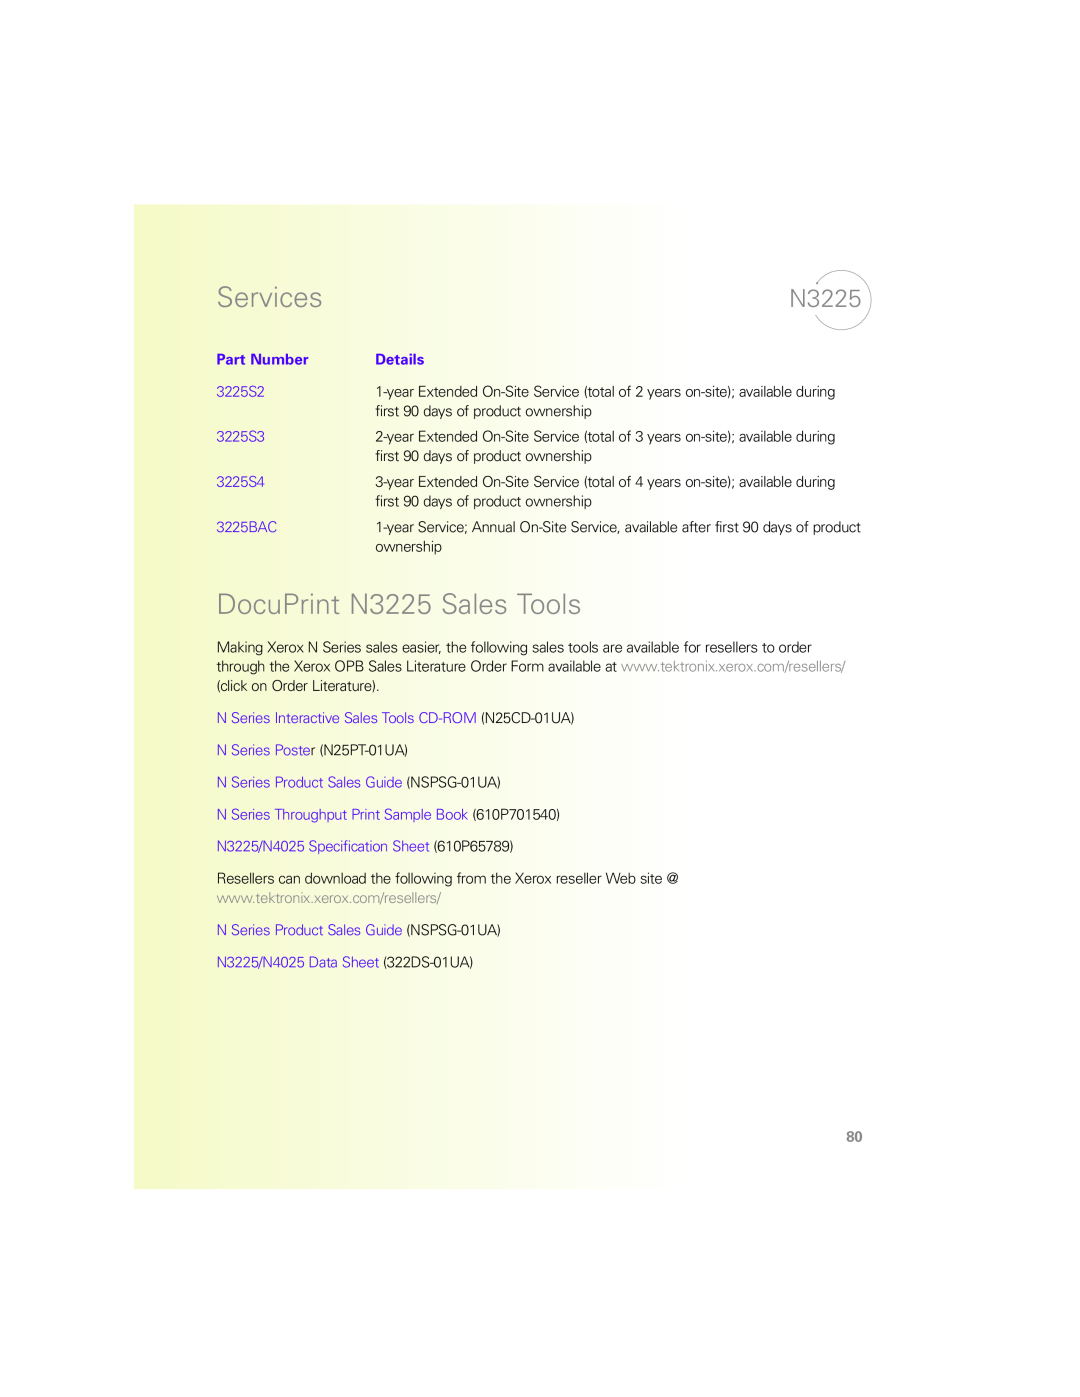 Xerox N Series manual DocuPrint N3225 Sales Tools, Services, Part Number, Details 